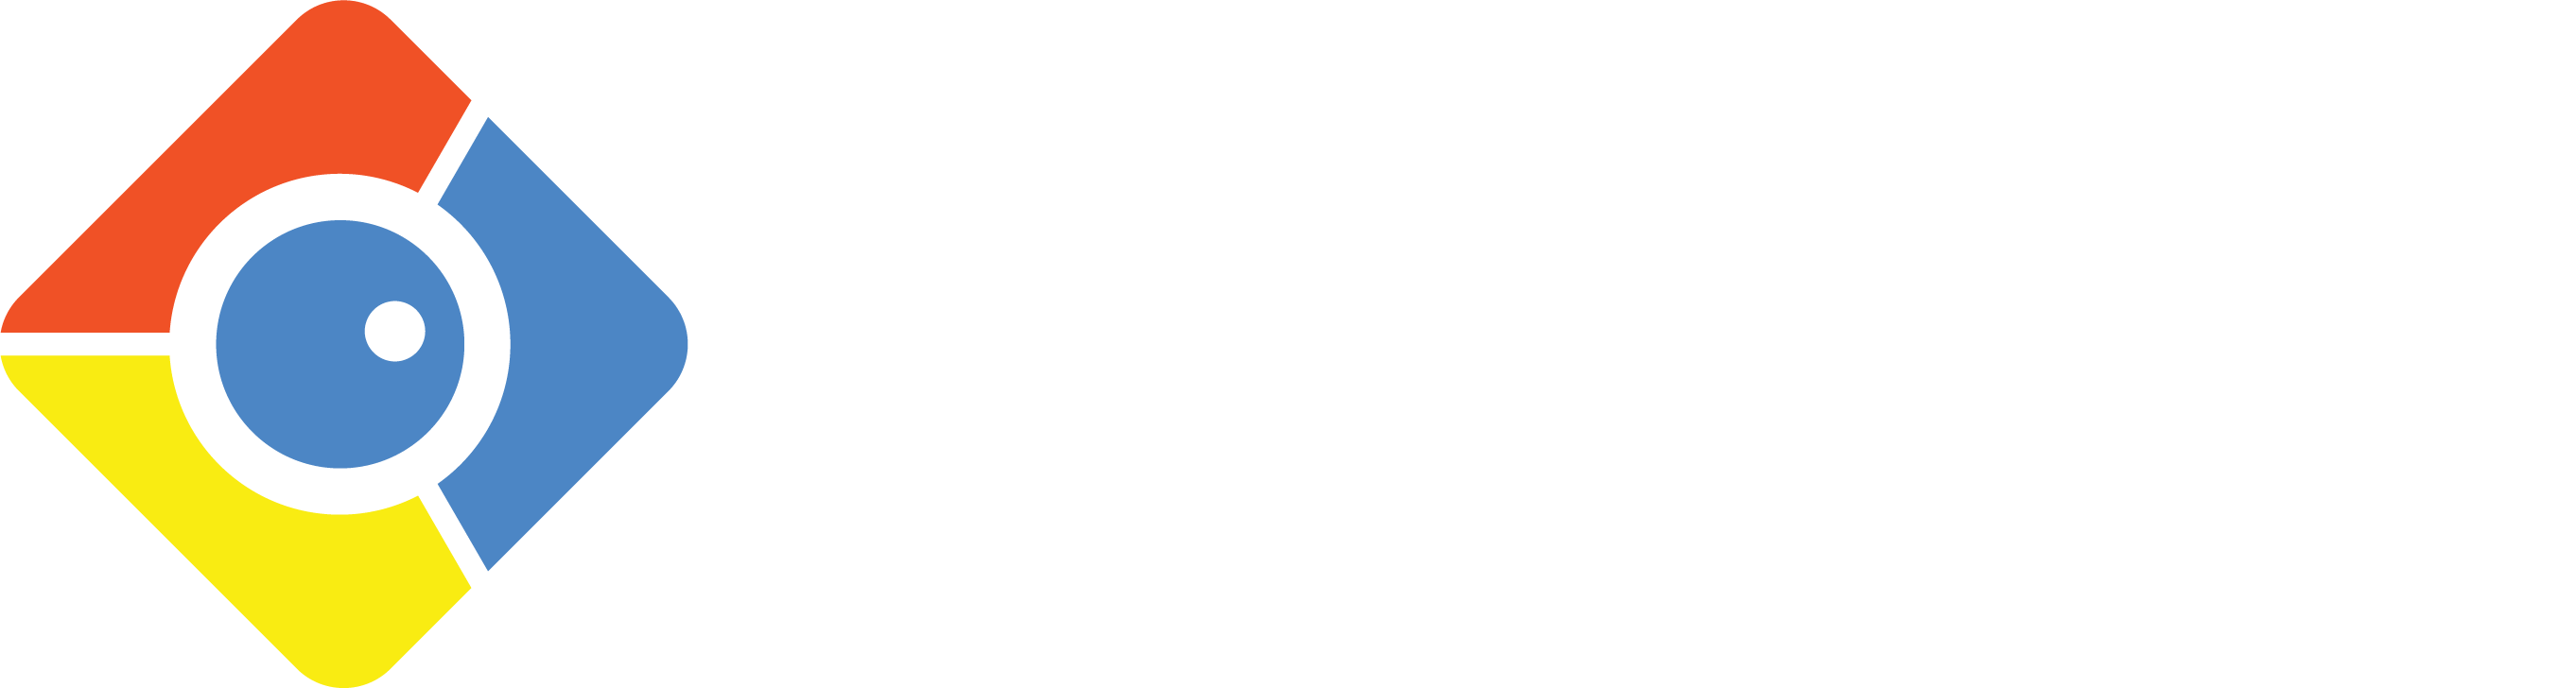 Milesight Logo